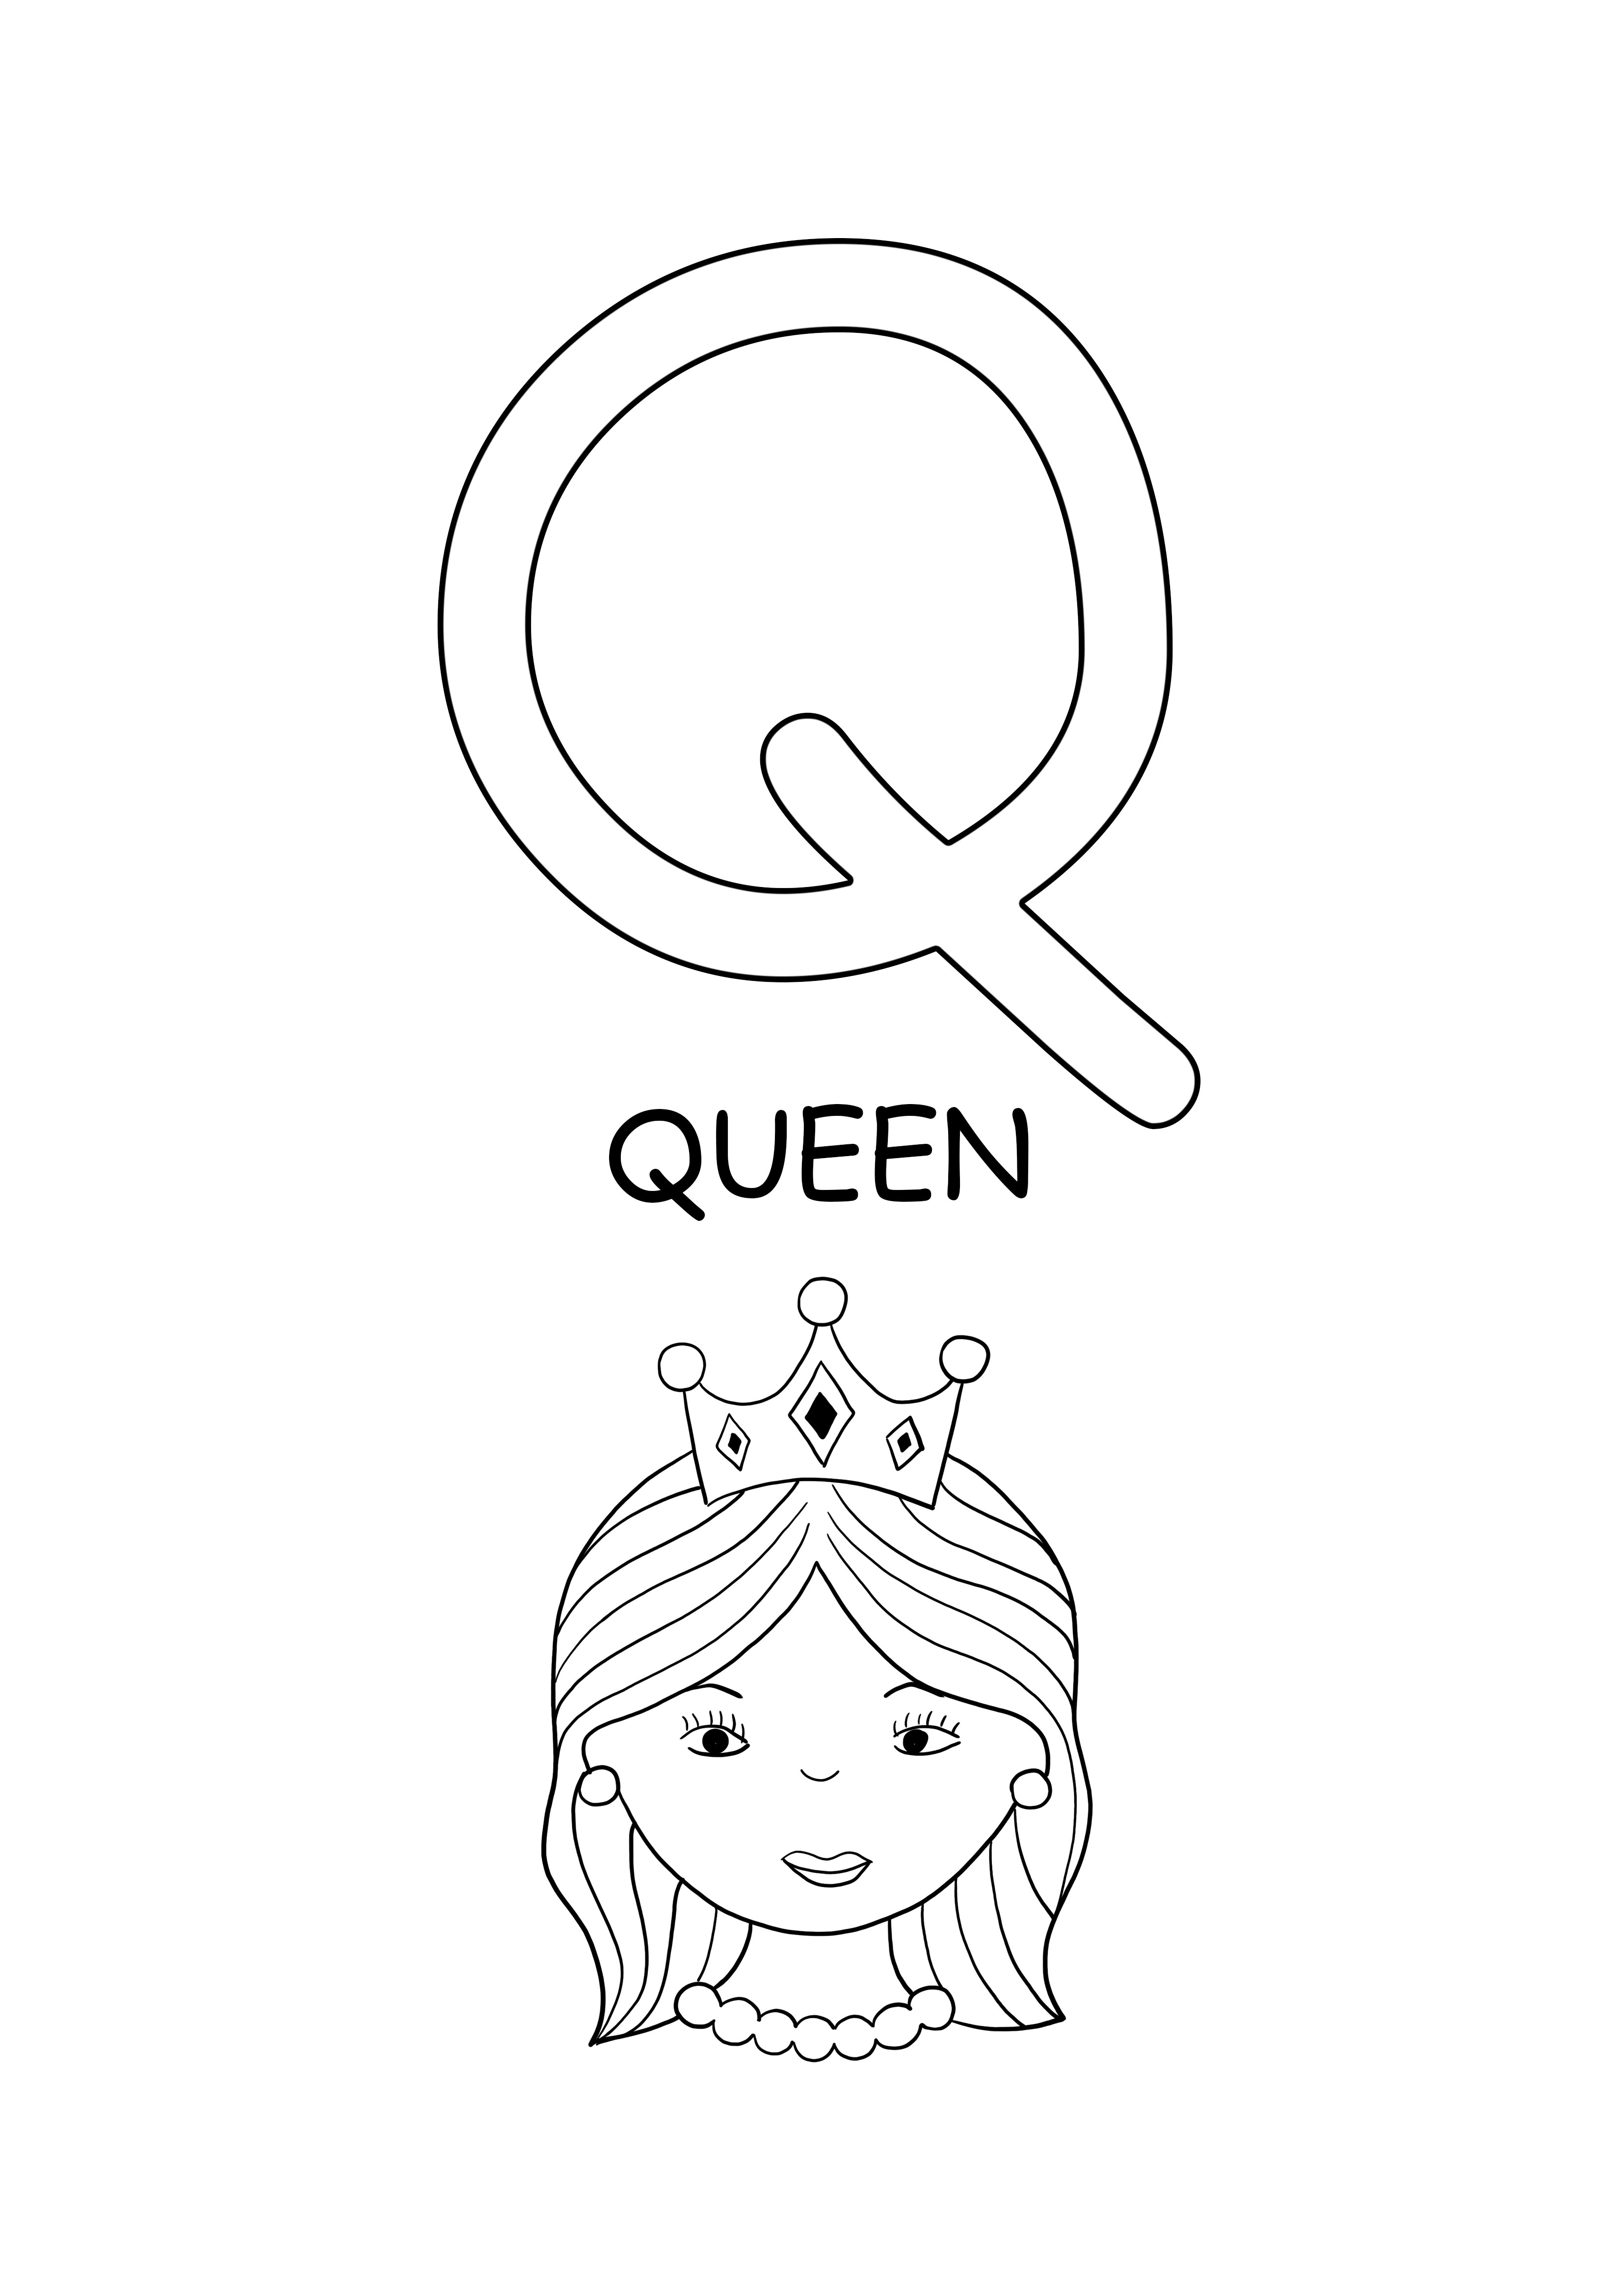 hoofdletters woord-koningin gratis afdrukbaar woord om in te kleuren kleurplaat